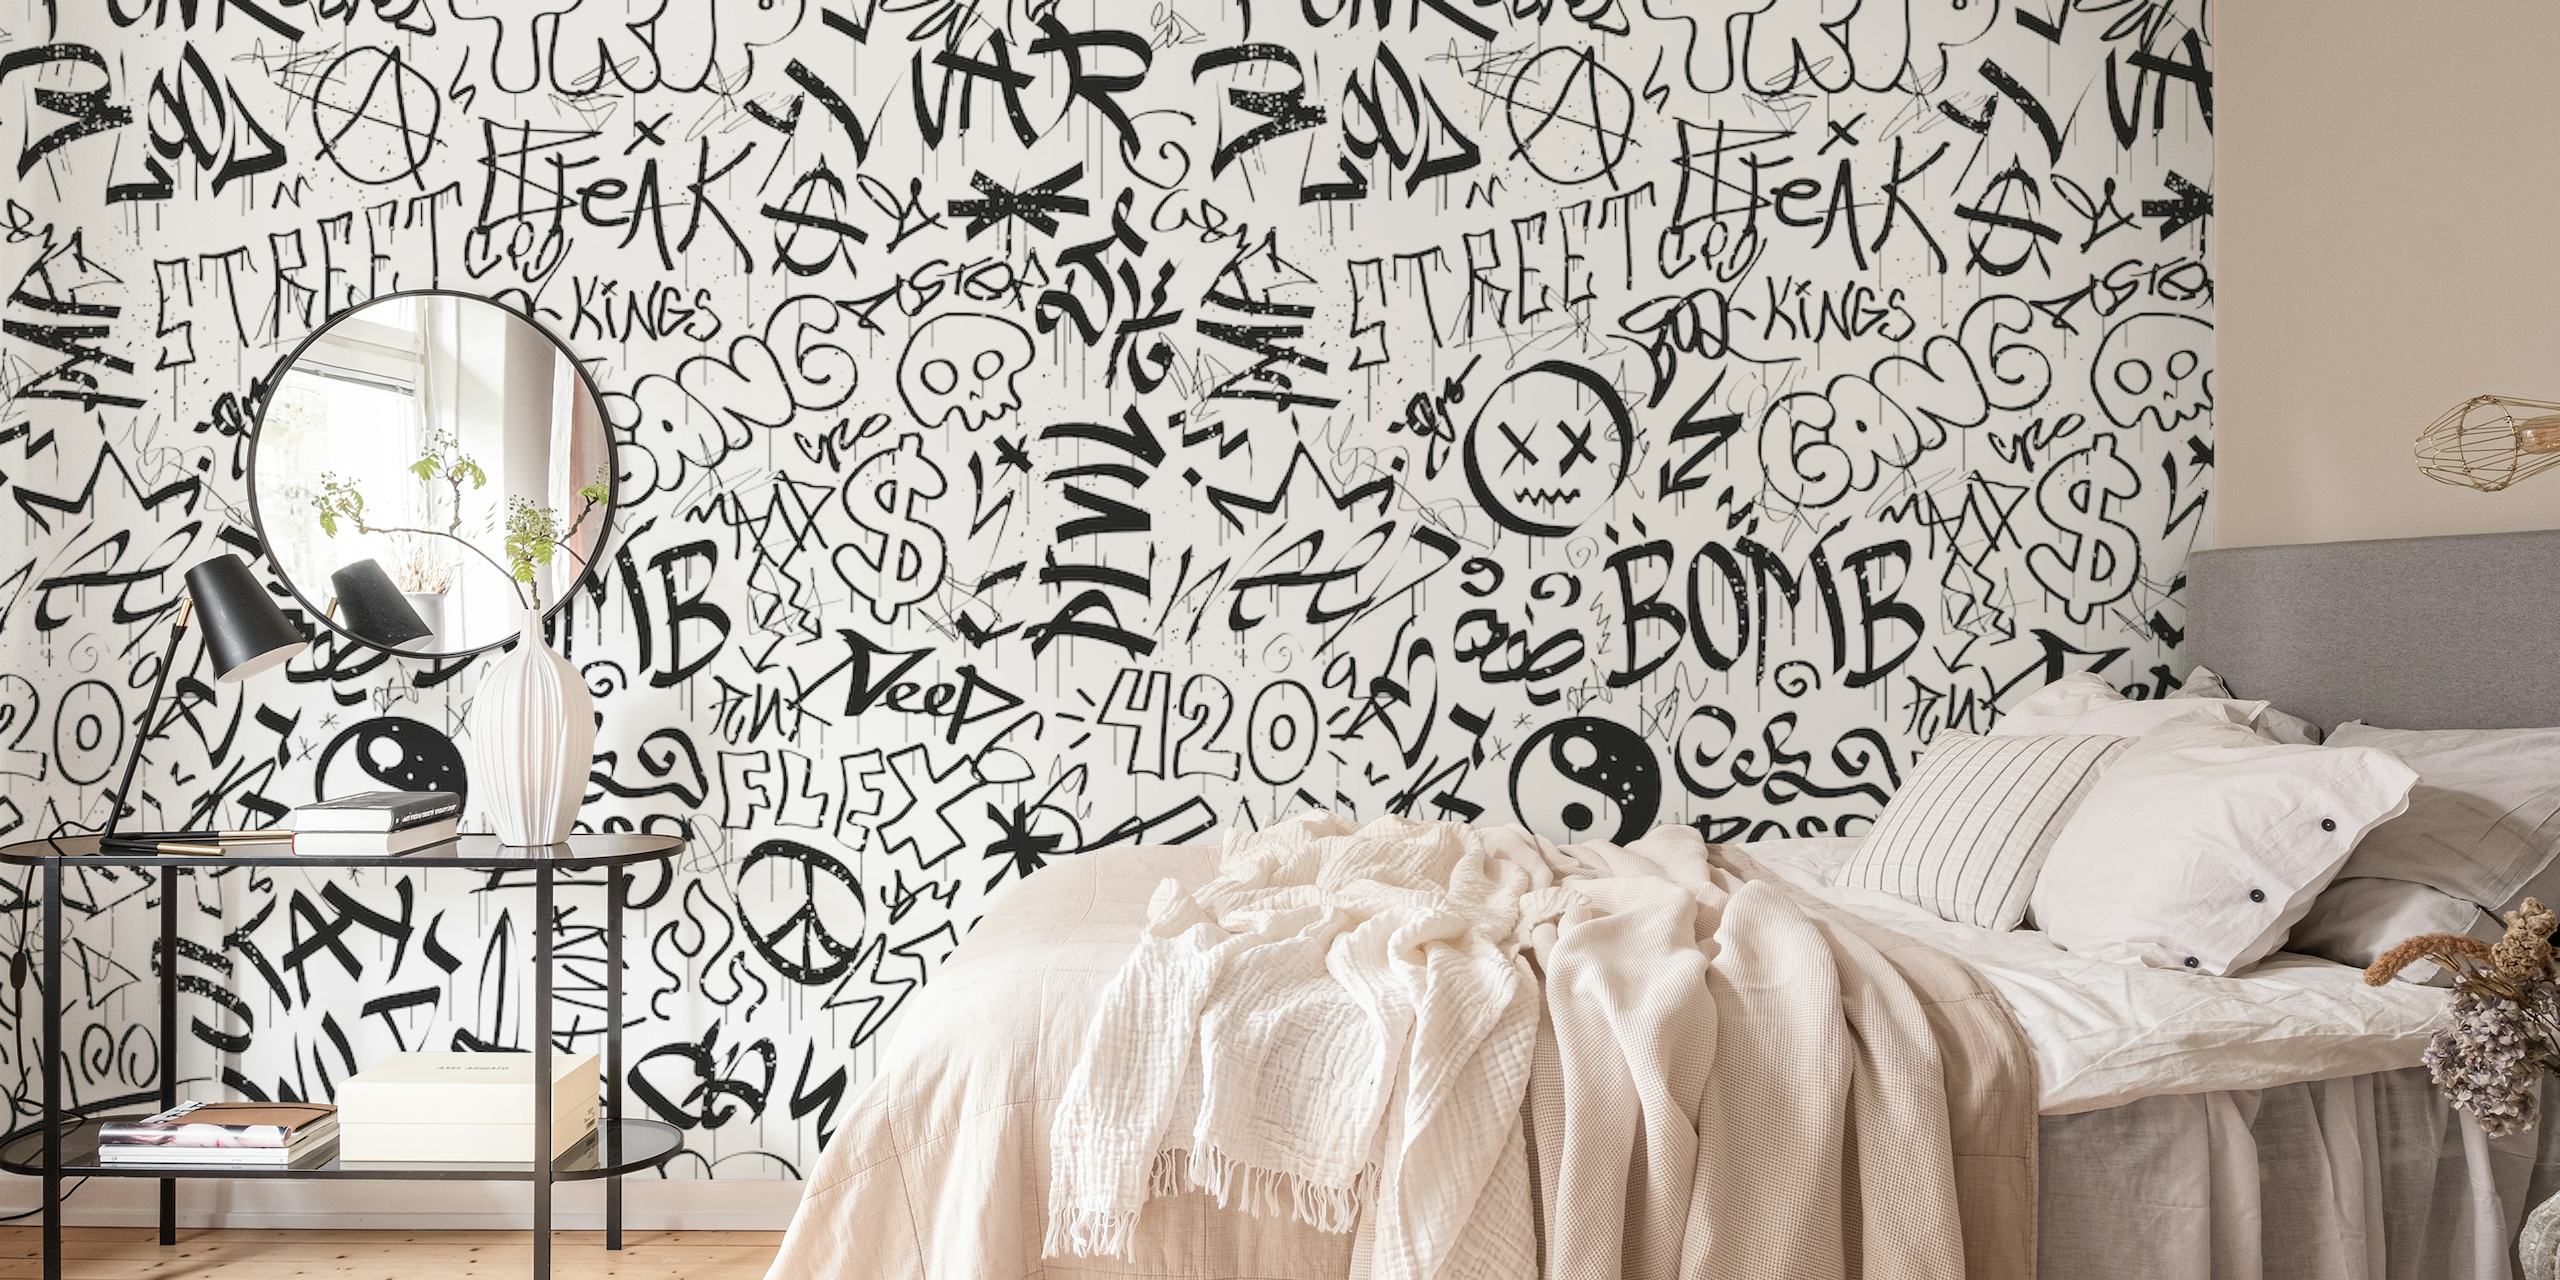 Schwarz-weißes Wandbild im Graffiti-Stil mit verschiedenen Tags und Zeichen.